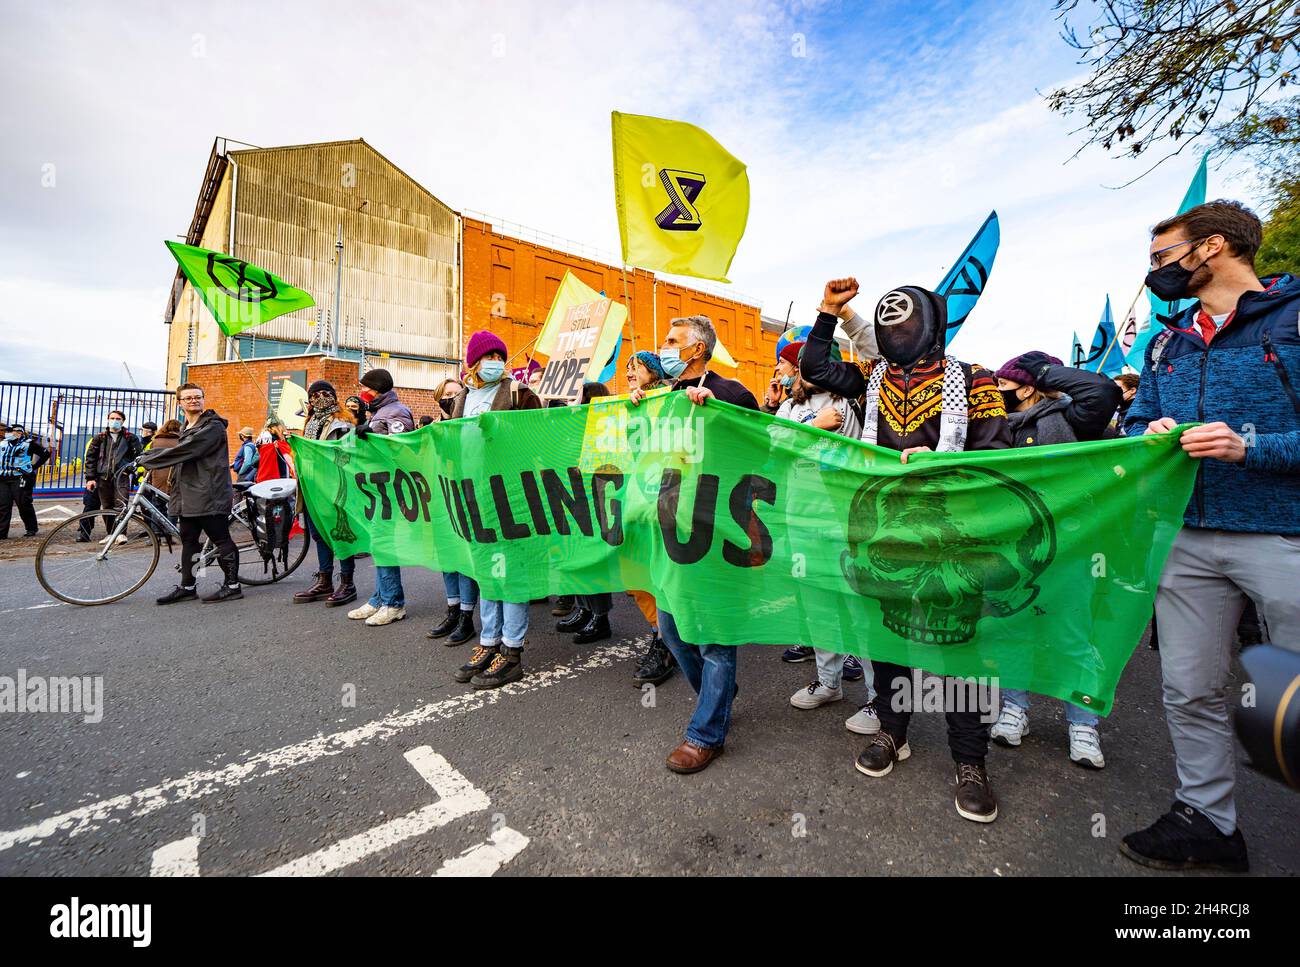 Glasgow, Scozia, Regno Unito. 4 novembre 2021. Il giorno 5 della Conferenza ONU sul cambiamento climatico a Glasgow ha visto la dimostrazione del gruppo di protesta della ribellione di estinzione fuori dal cantiere BAE Systems a Govan. Hanno protestato contro il commercio di armi nel Regno Unito. Iain Masterton/Alamy Live News. Foto Stock